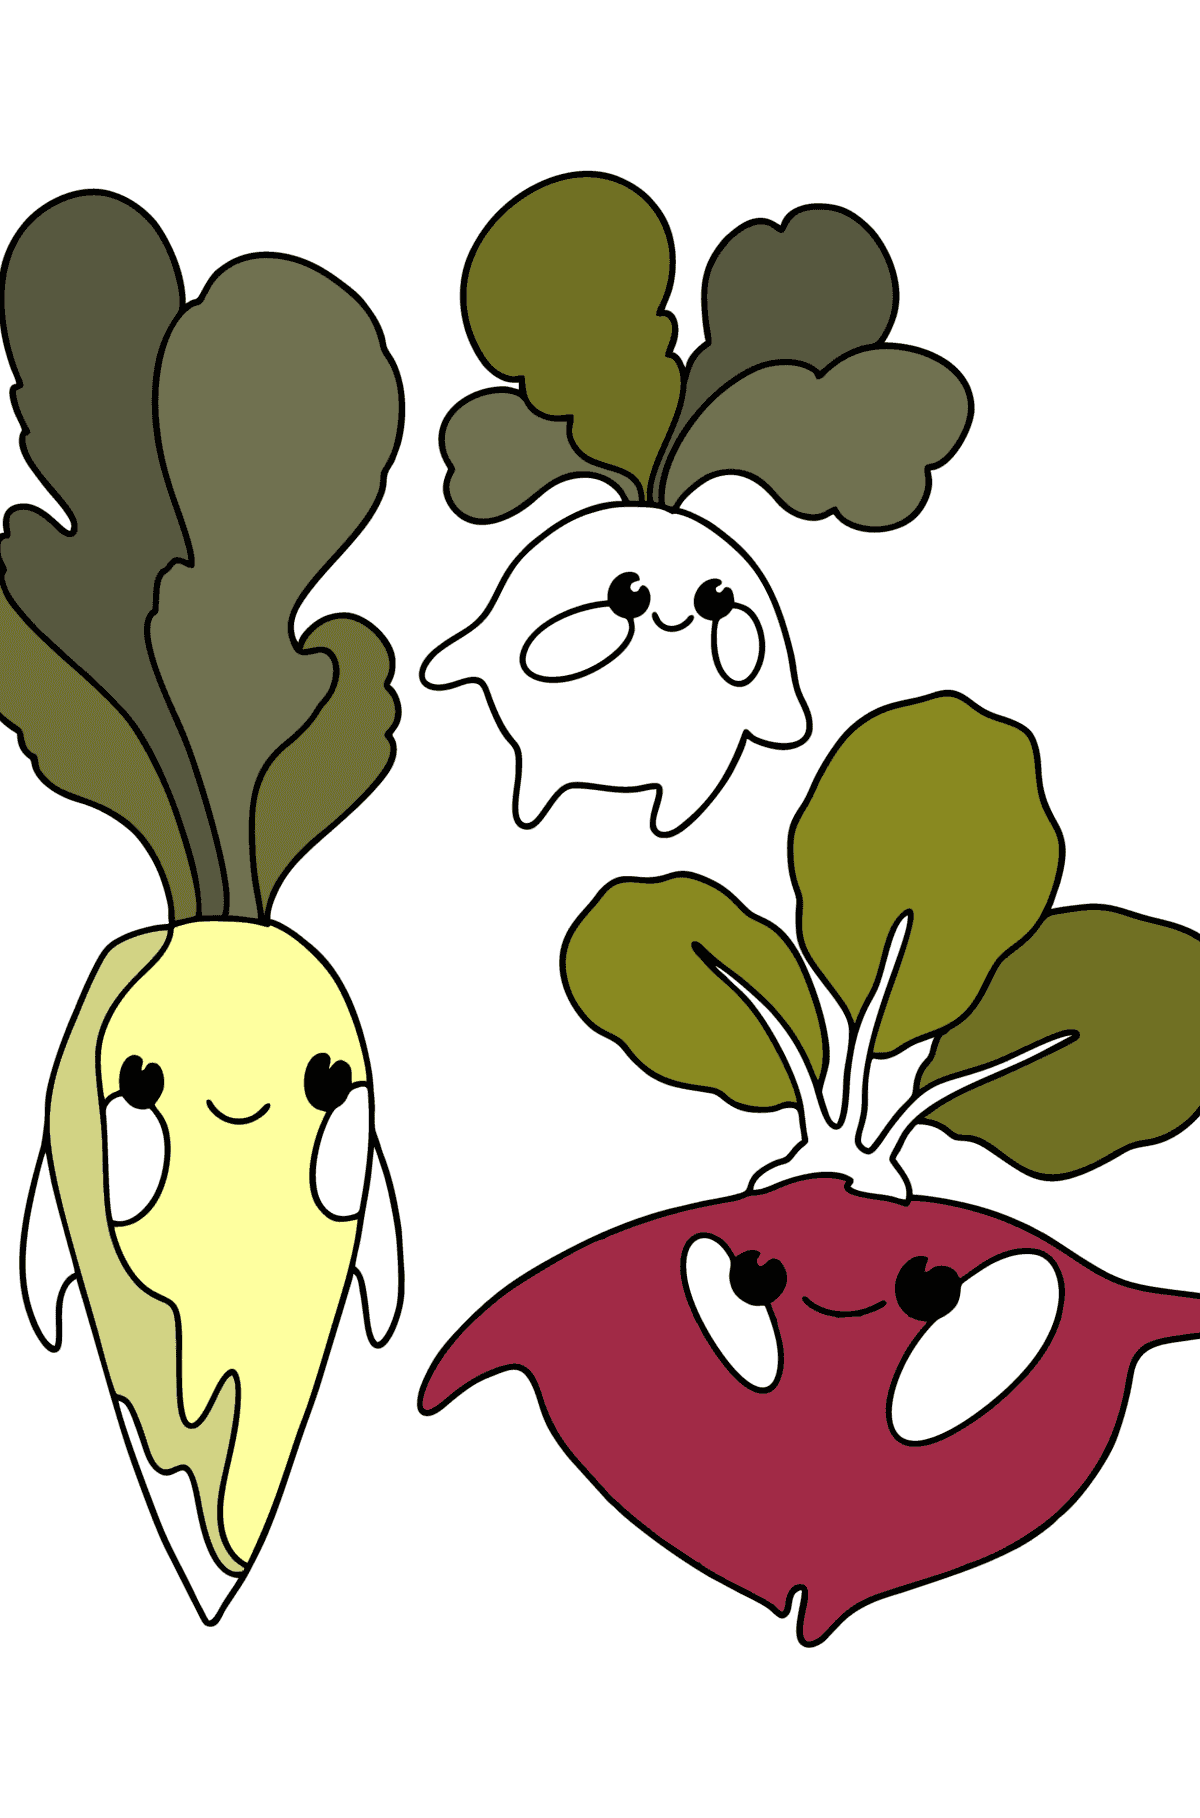 Målarbild Grönsaker: daikon, rädisa, rödbetor - Målarbilder För barn